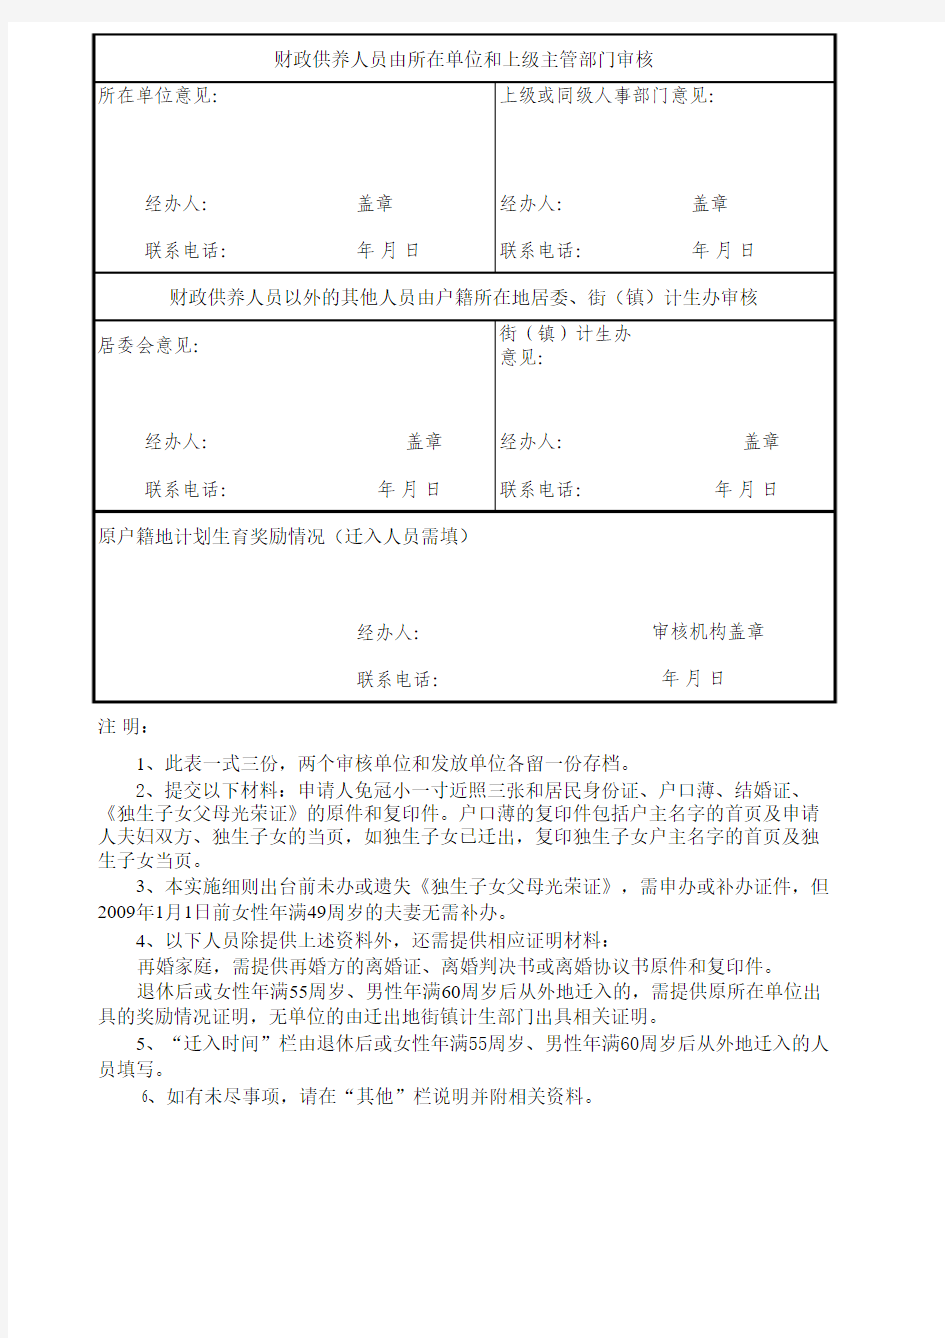 广州市城镇独生子女父母计划生育奖励金申请表(B表)xls